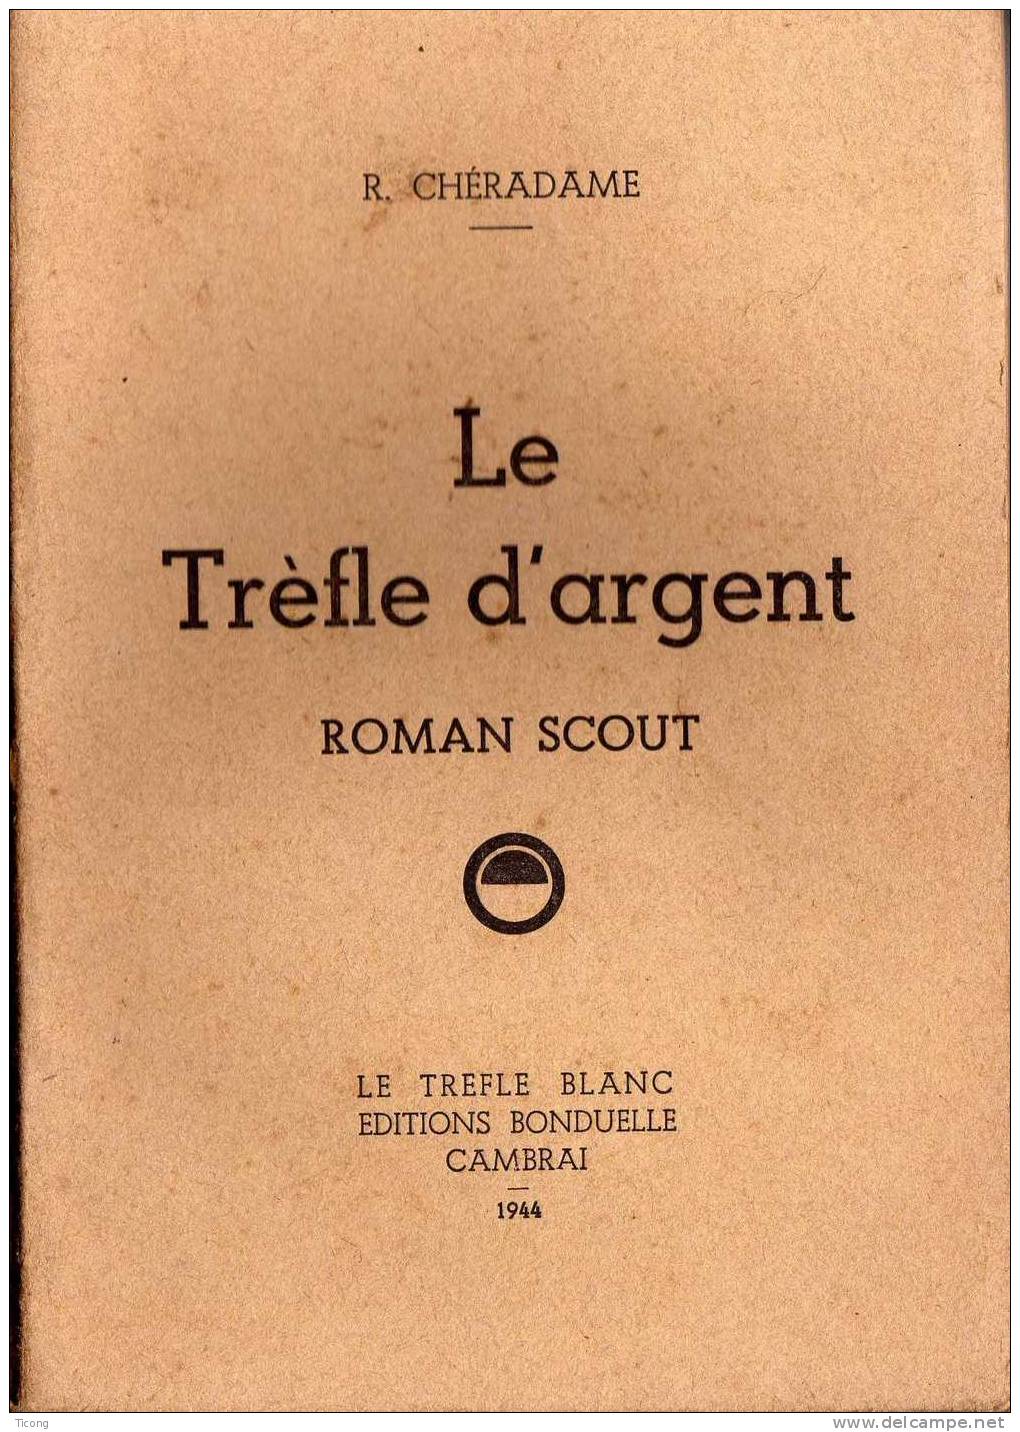 SCOUTISME- TREFLE D ARGENT ROMAN SCOUT, R CHERADAME    - 1ERE EDITION 1944  - LE TREFLE BLANC EDITIONS BONDUELLE CAMBRAI - Scoutisme